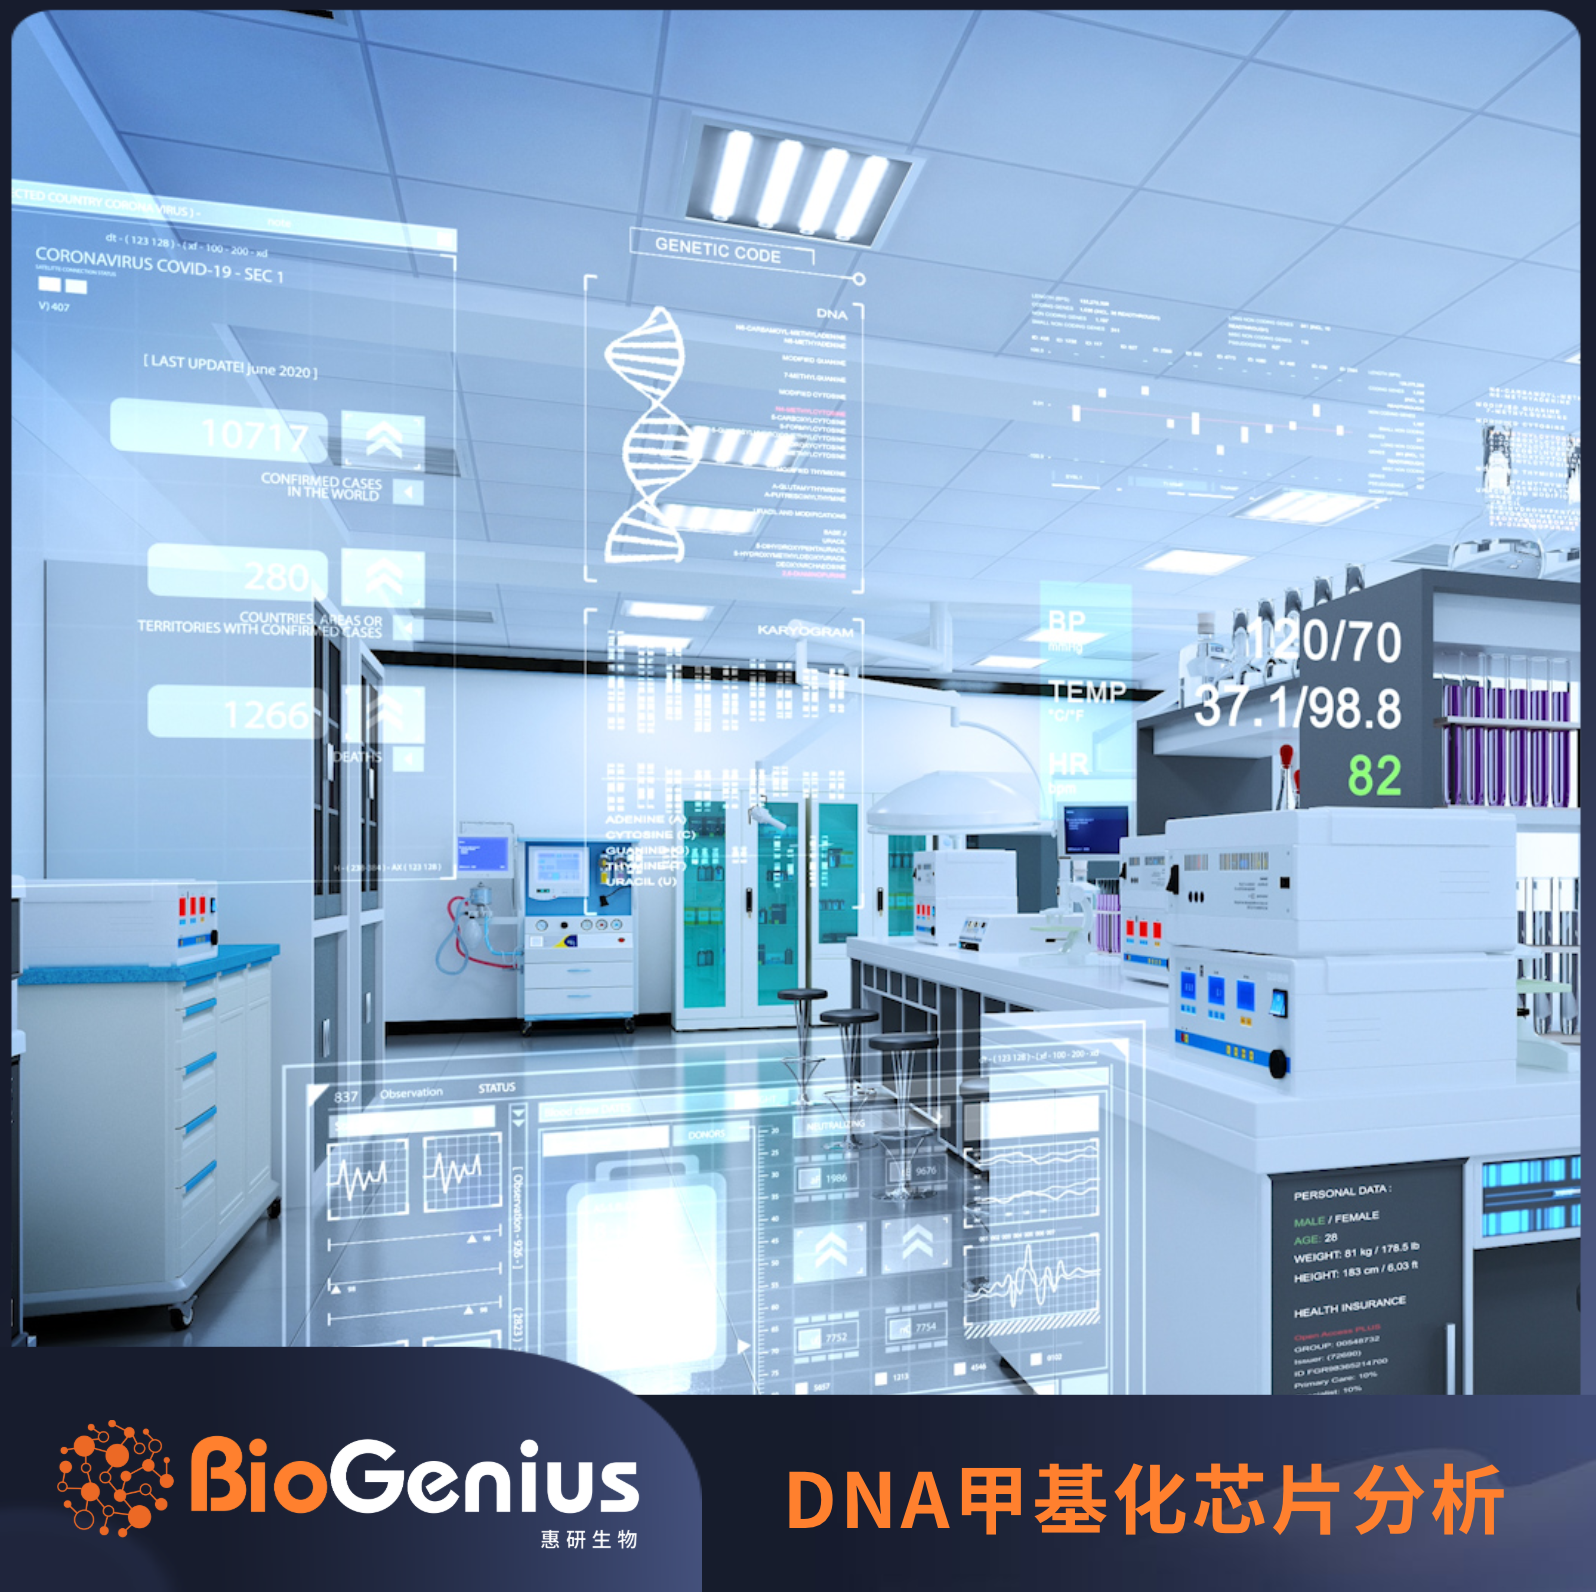 DNA甲基化芯片相关性评估